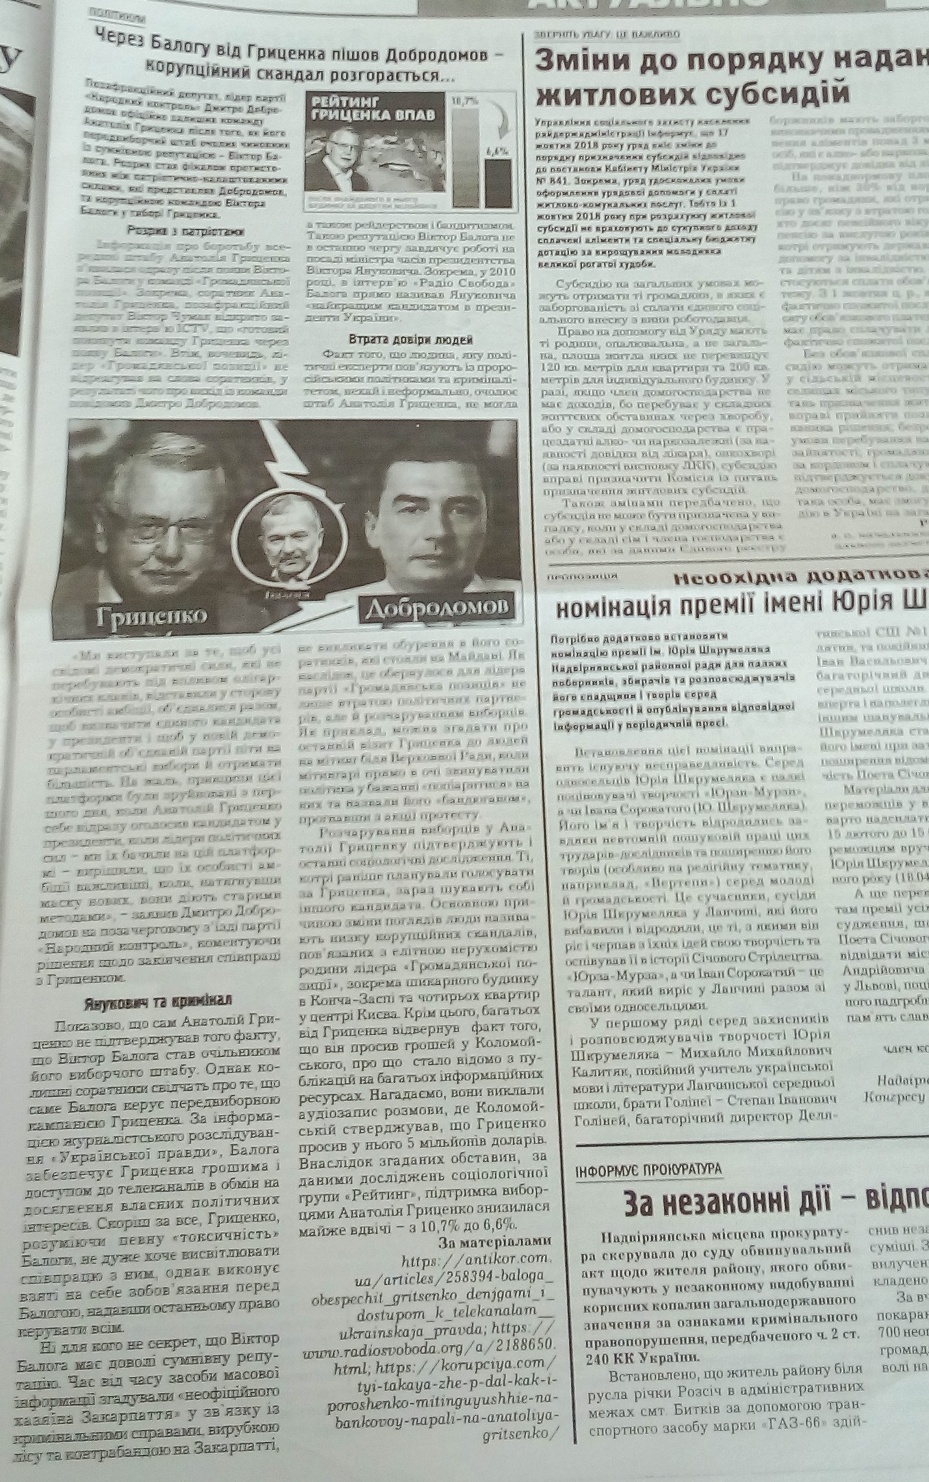 24.12.18. Grytsenko black piar gazety 31